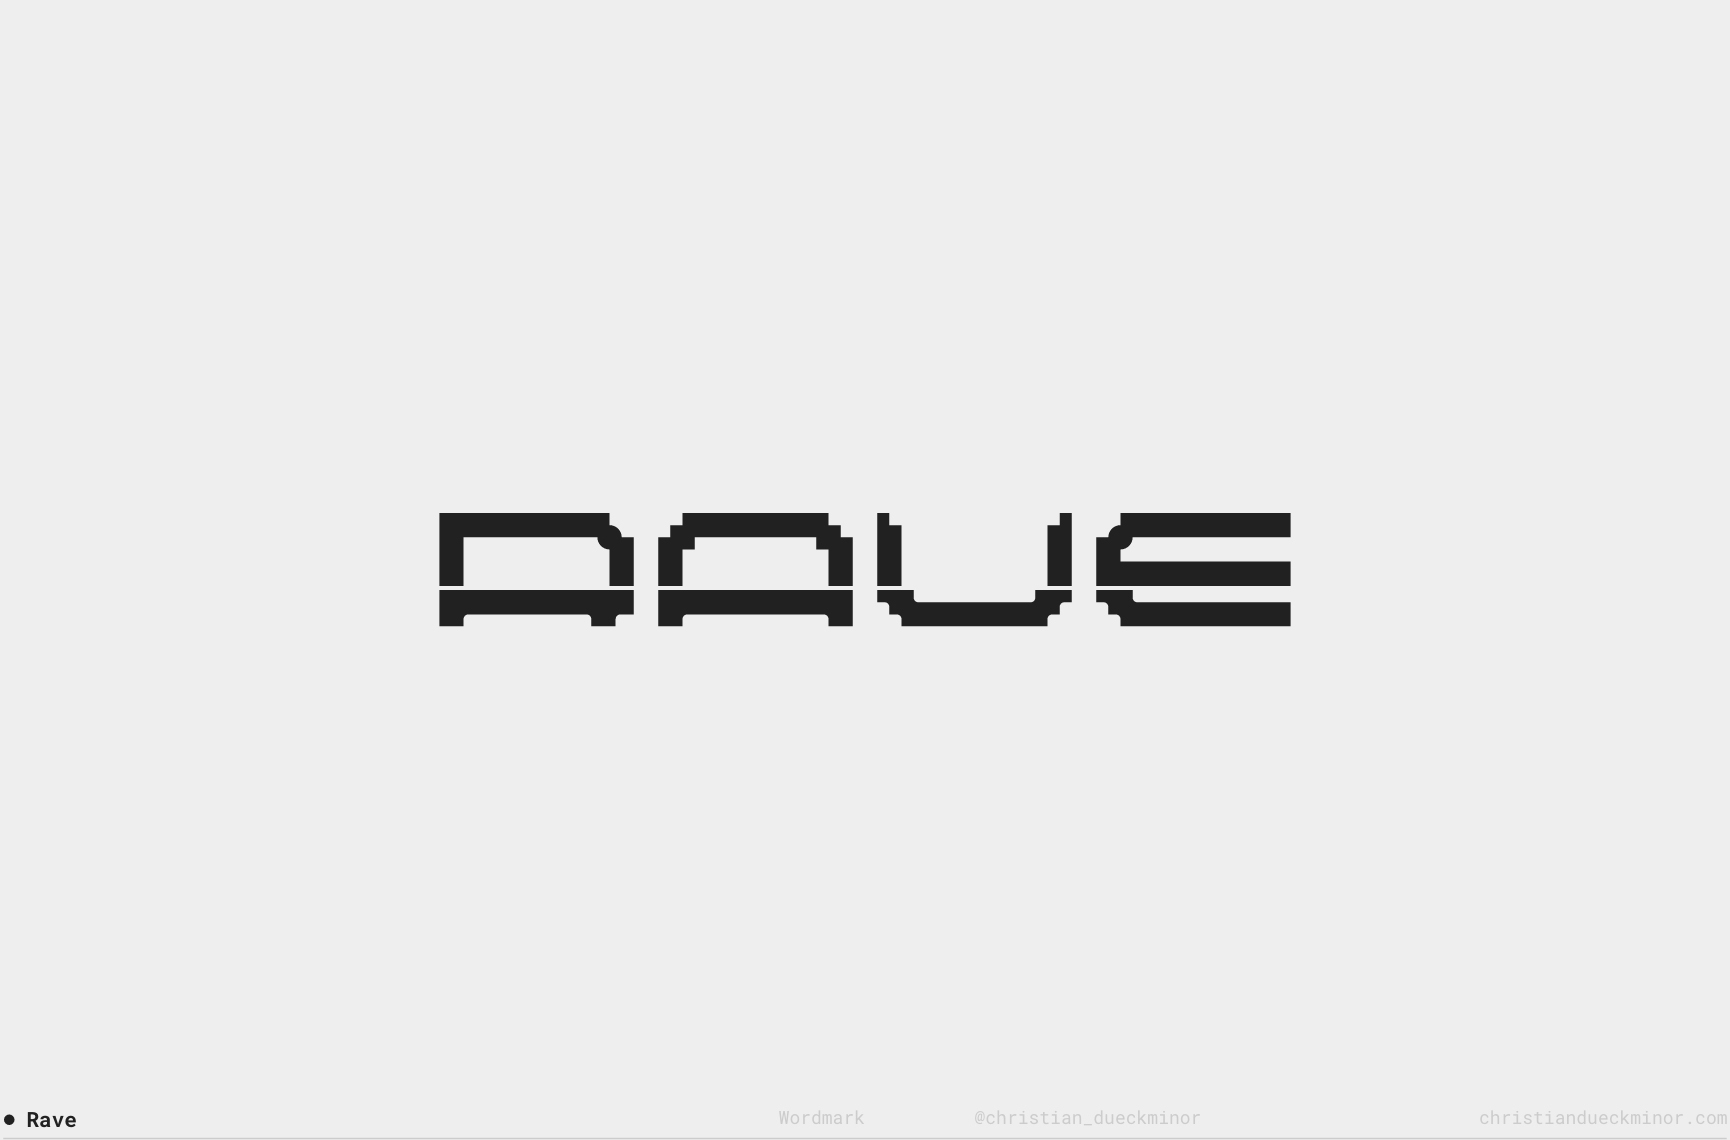 Christian-Dueckminor-Logo-Collection-02-10